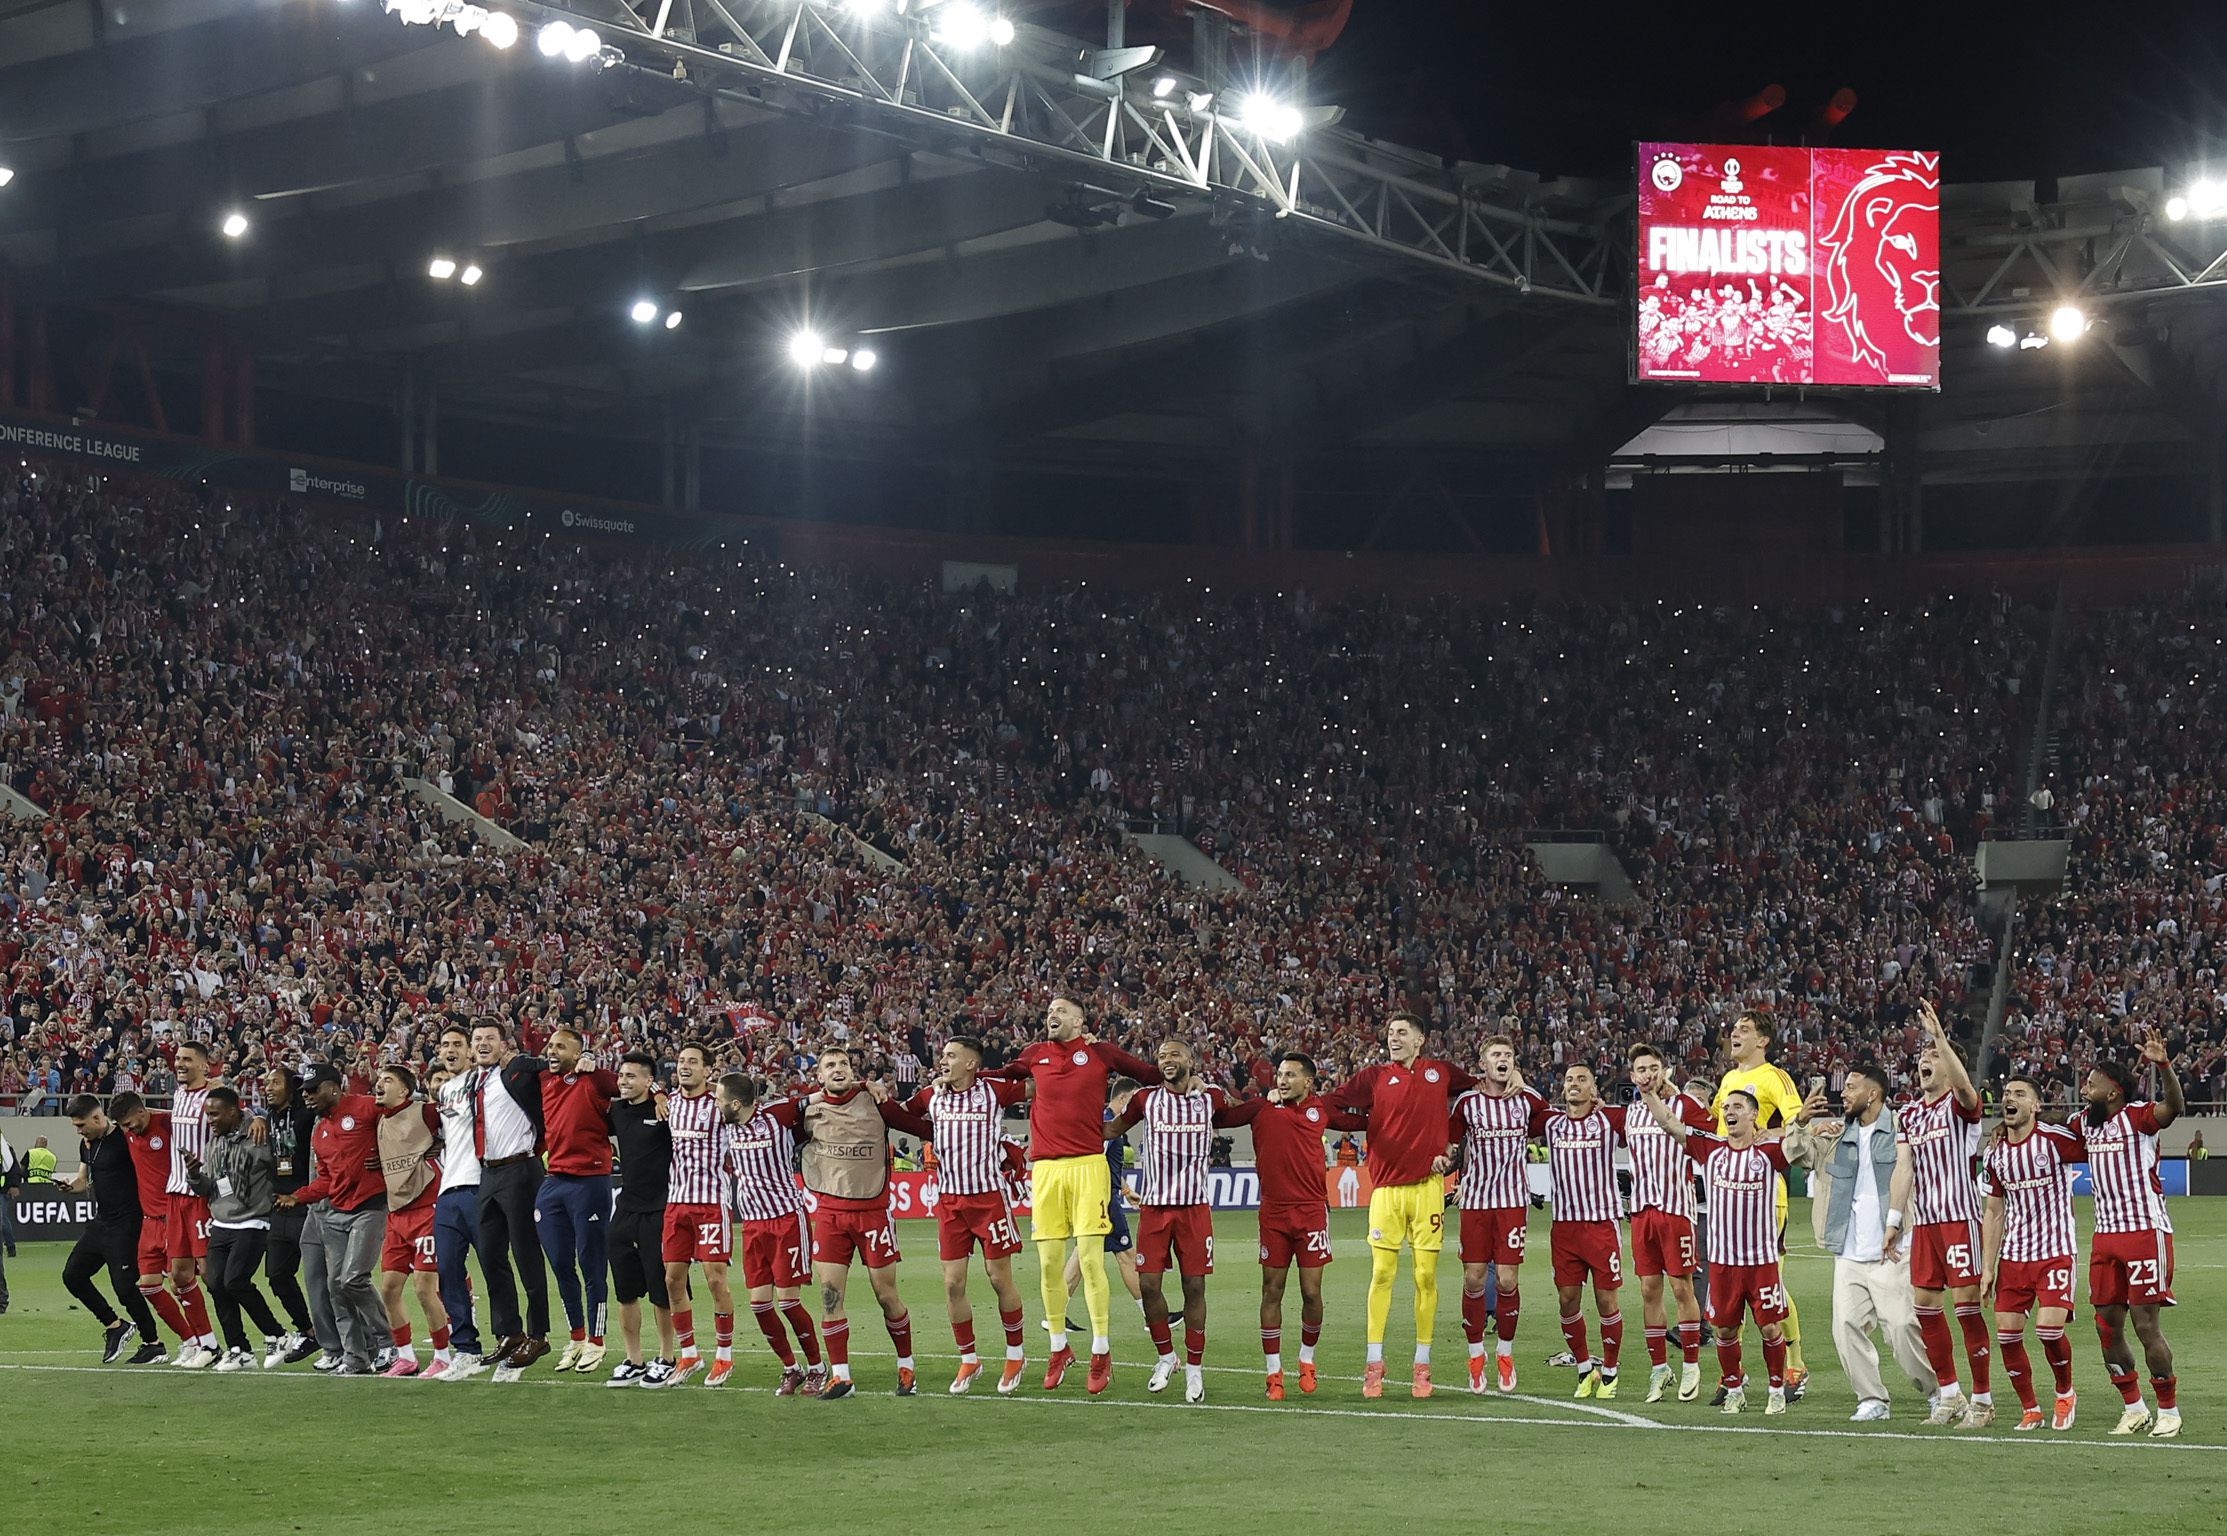 Los jugadores del Olympiakos celebrando ante su hinchada la clasificación a la final de Conference League, tras eliminar al Aston Villa por marcador global de 6-2 - crédito Alkis Konstantinidis/REUTERS